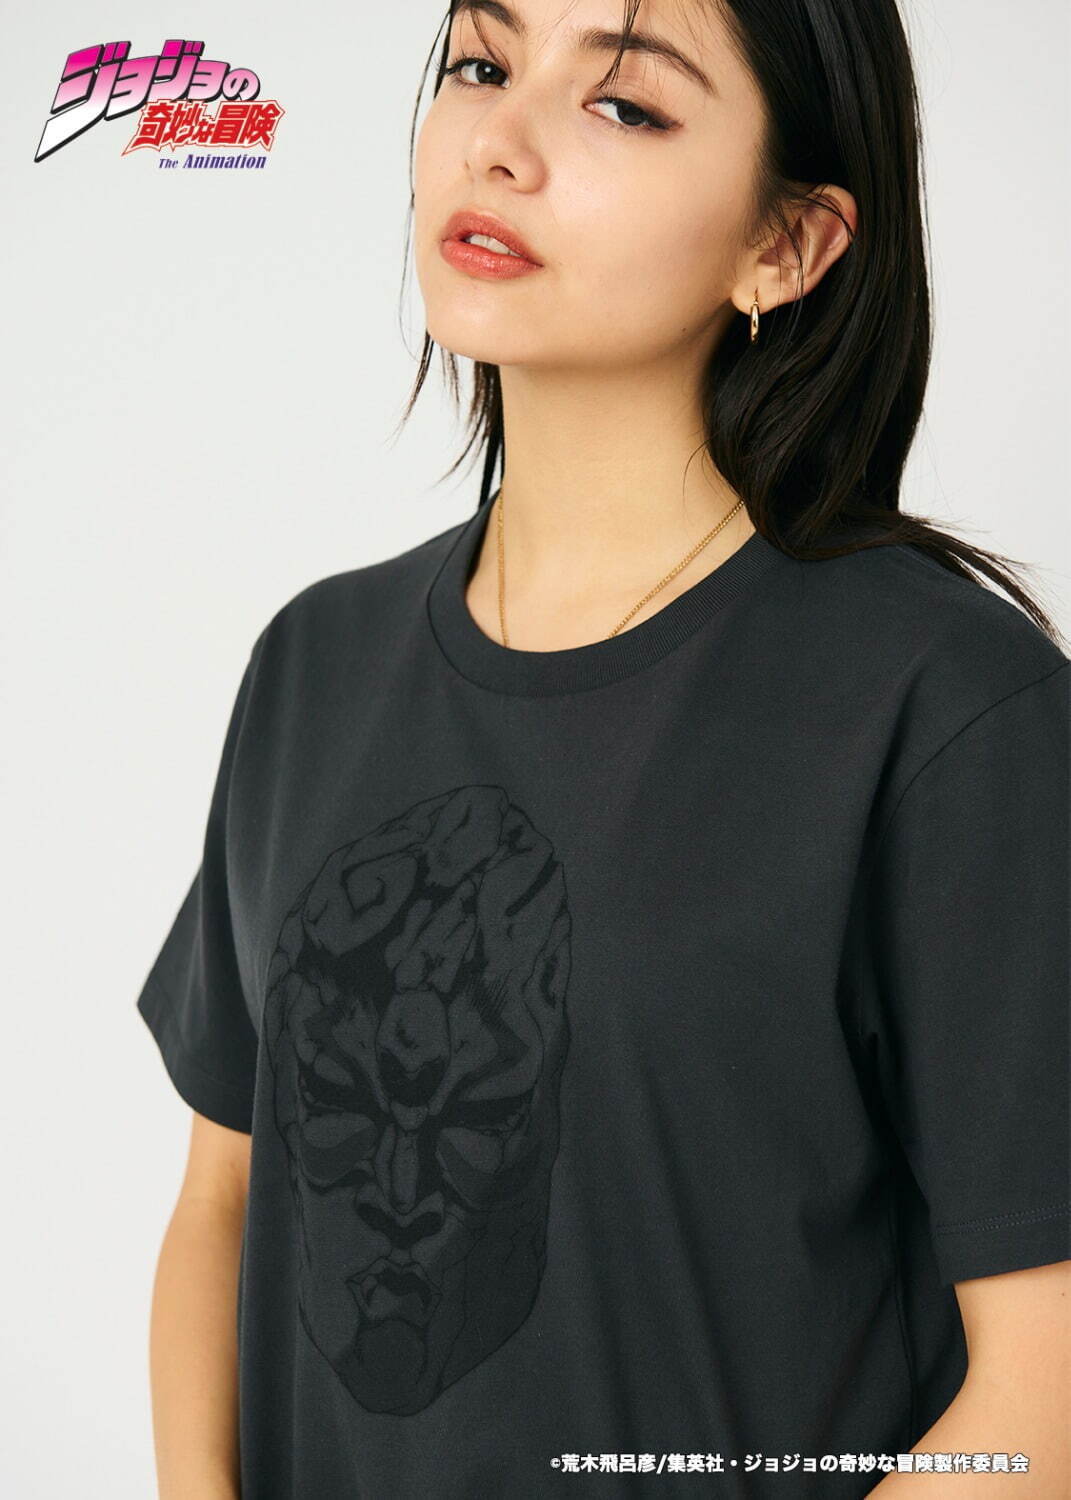 石仮面(ジョジョの奇妙な冒険) Tシャツ 3,500円